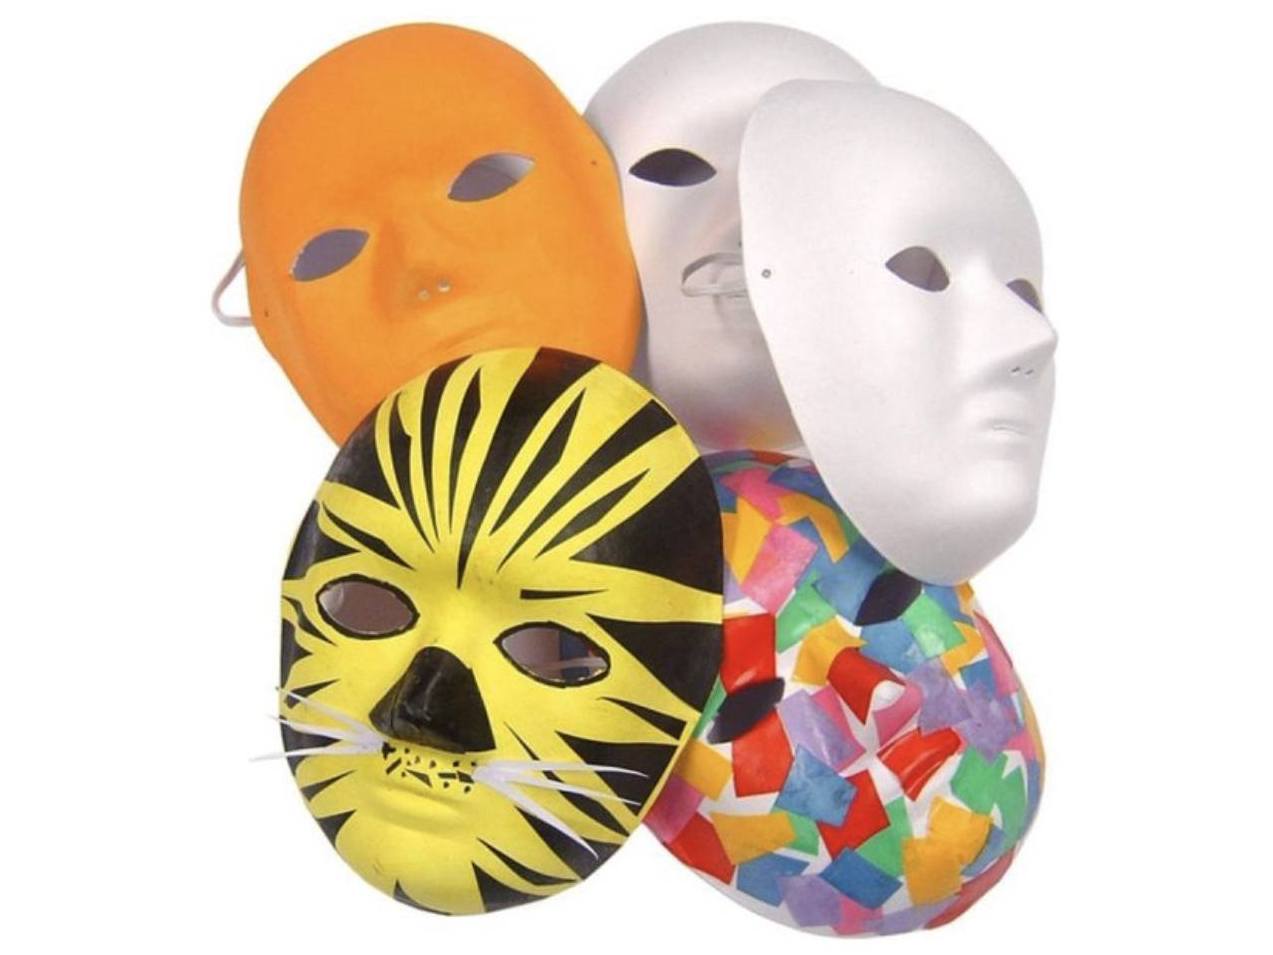 een experiment doen verkouden worden Leggen Decorating paper-mache mask